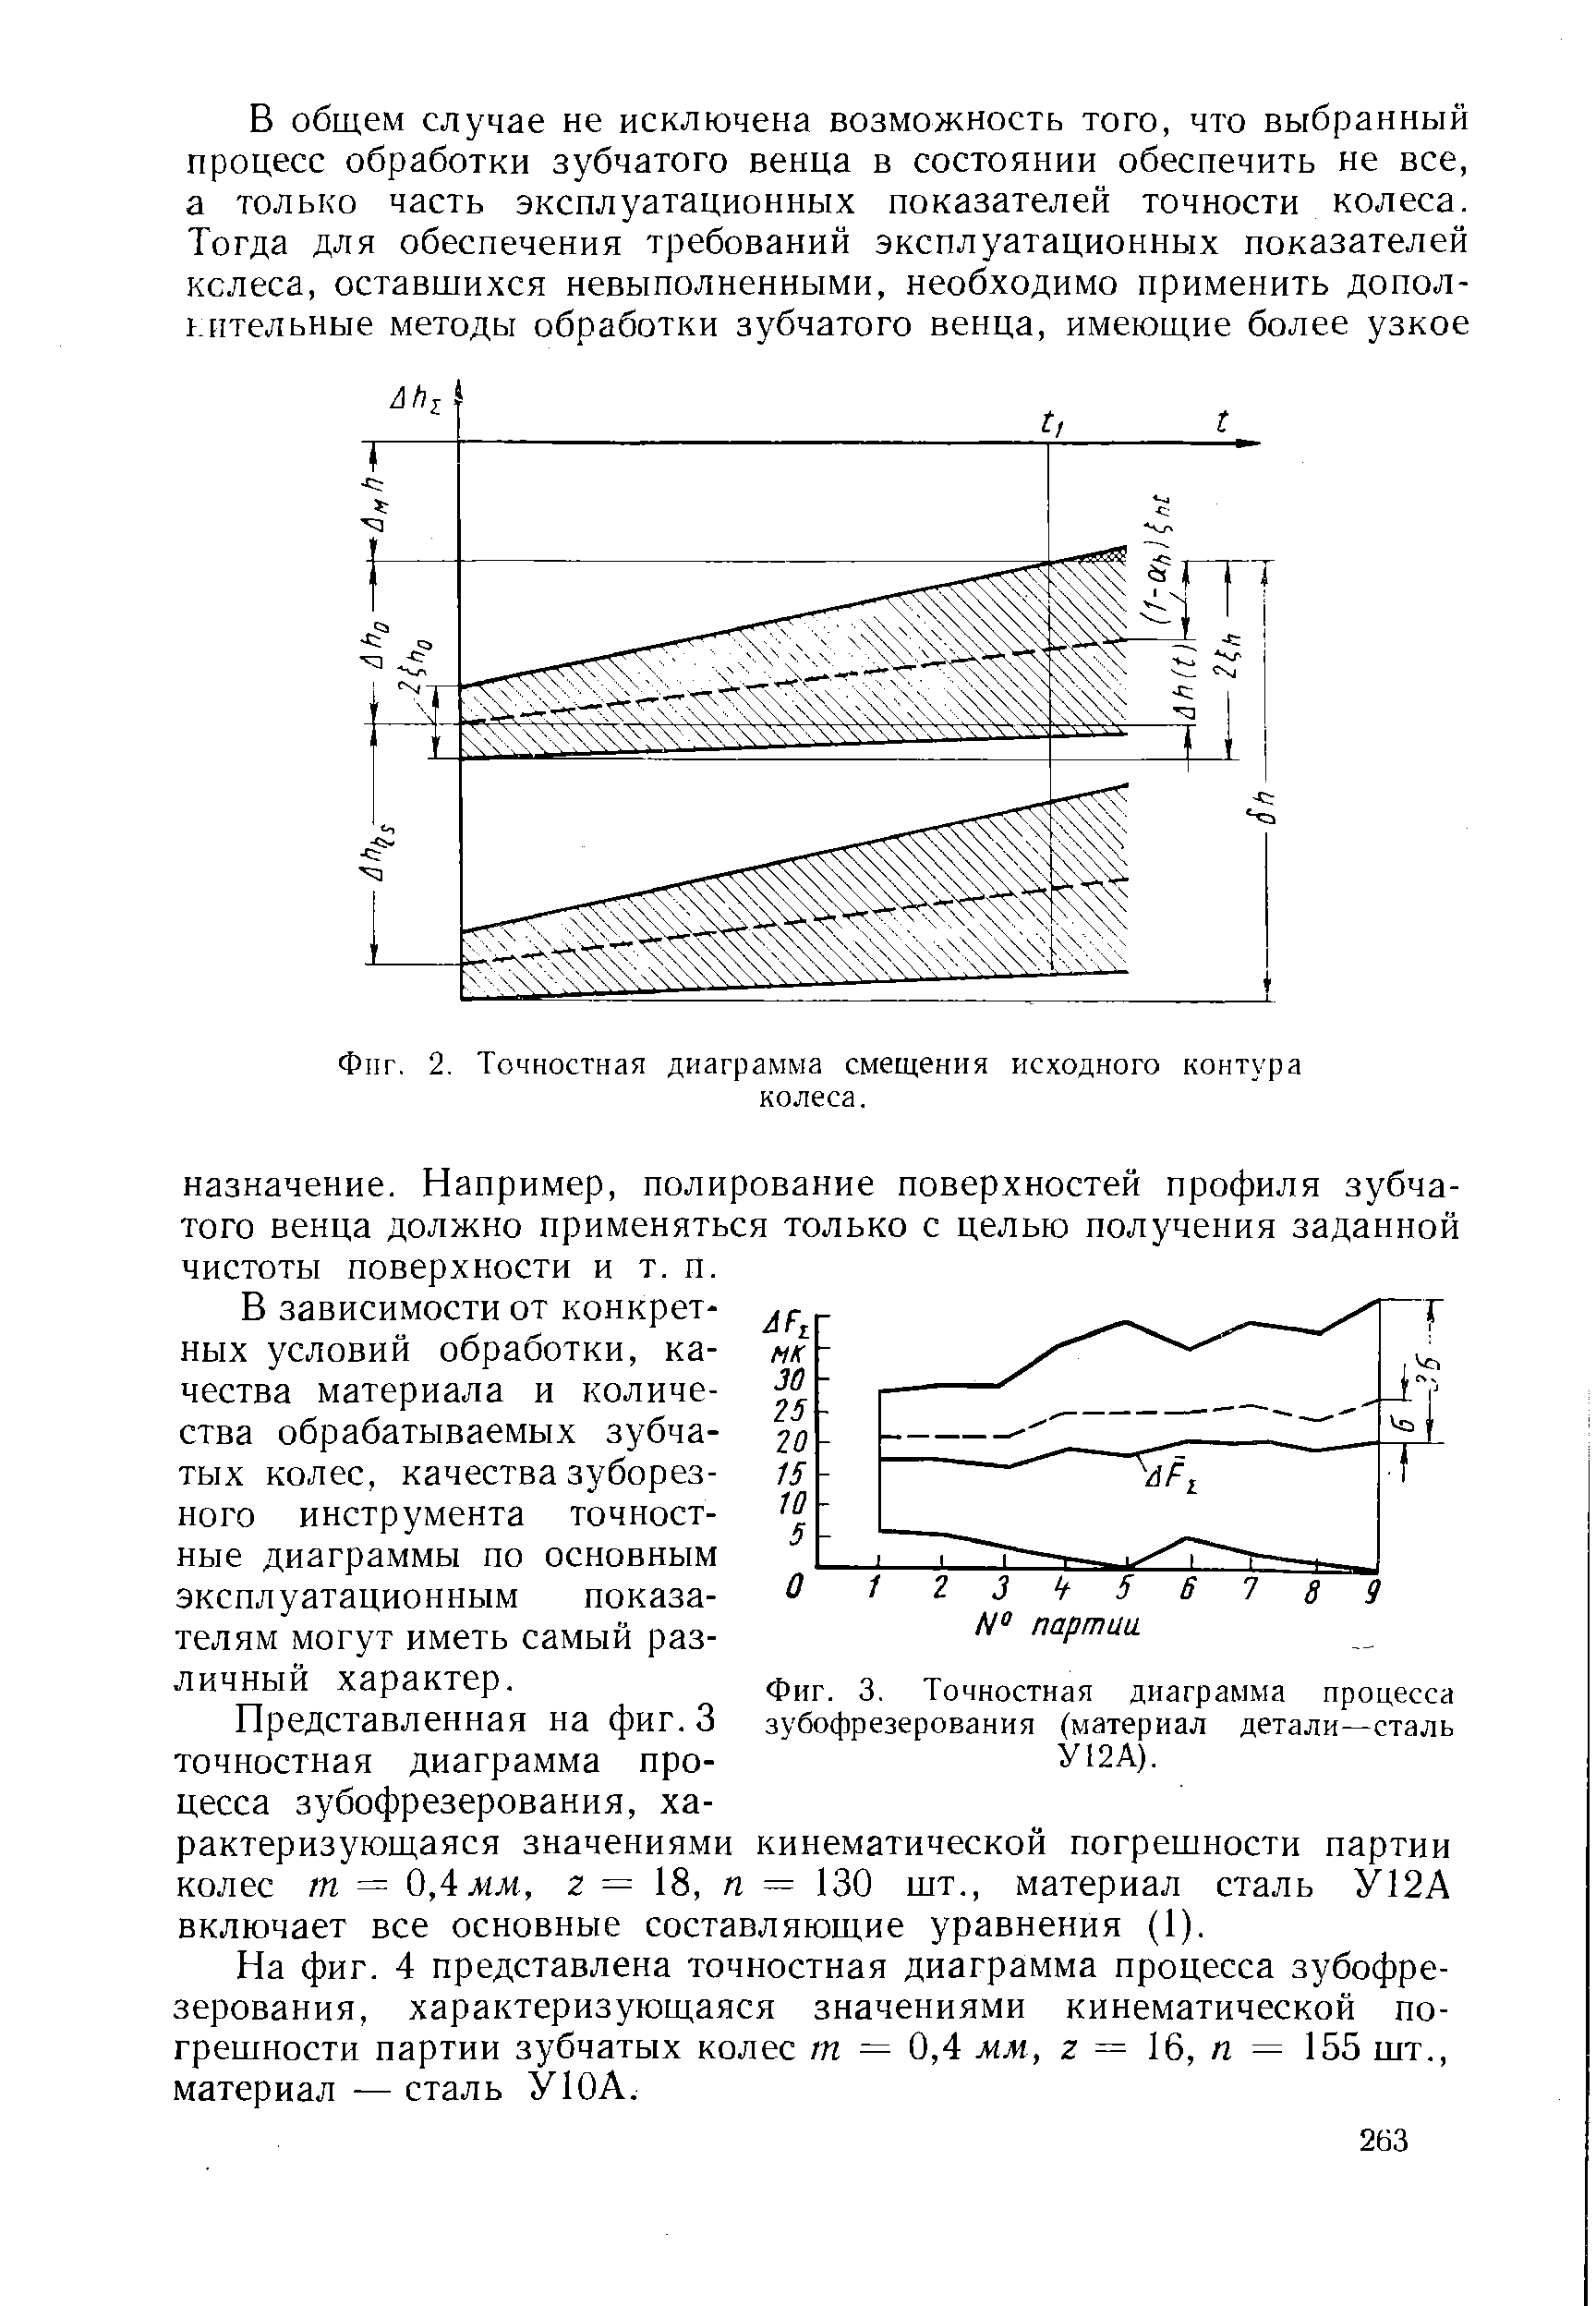 Фиг. 3, Точностная диаграмма процесса зубофрезерования (материал детали—сталь У12А).
